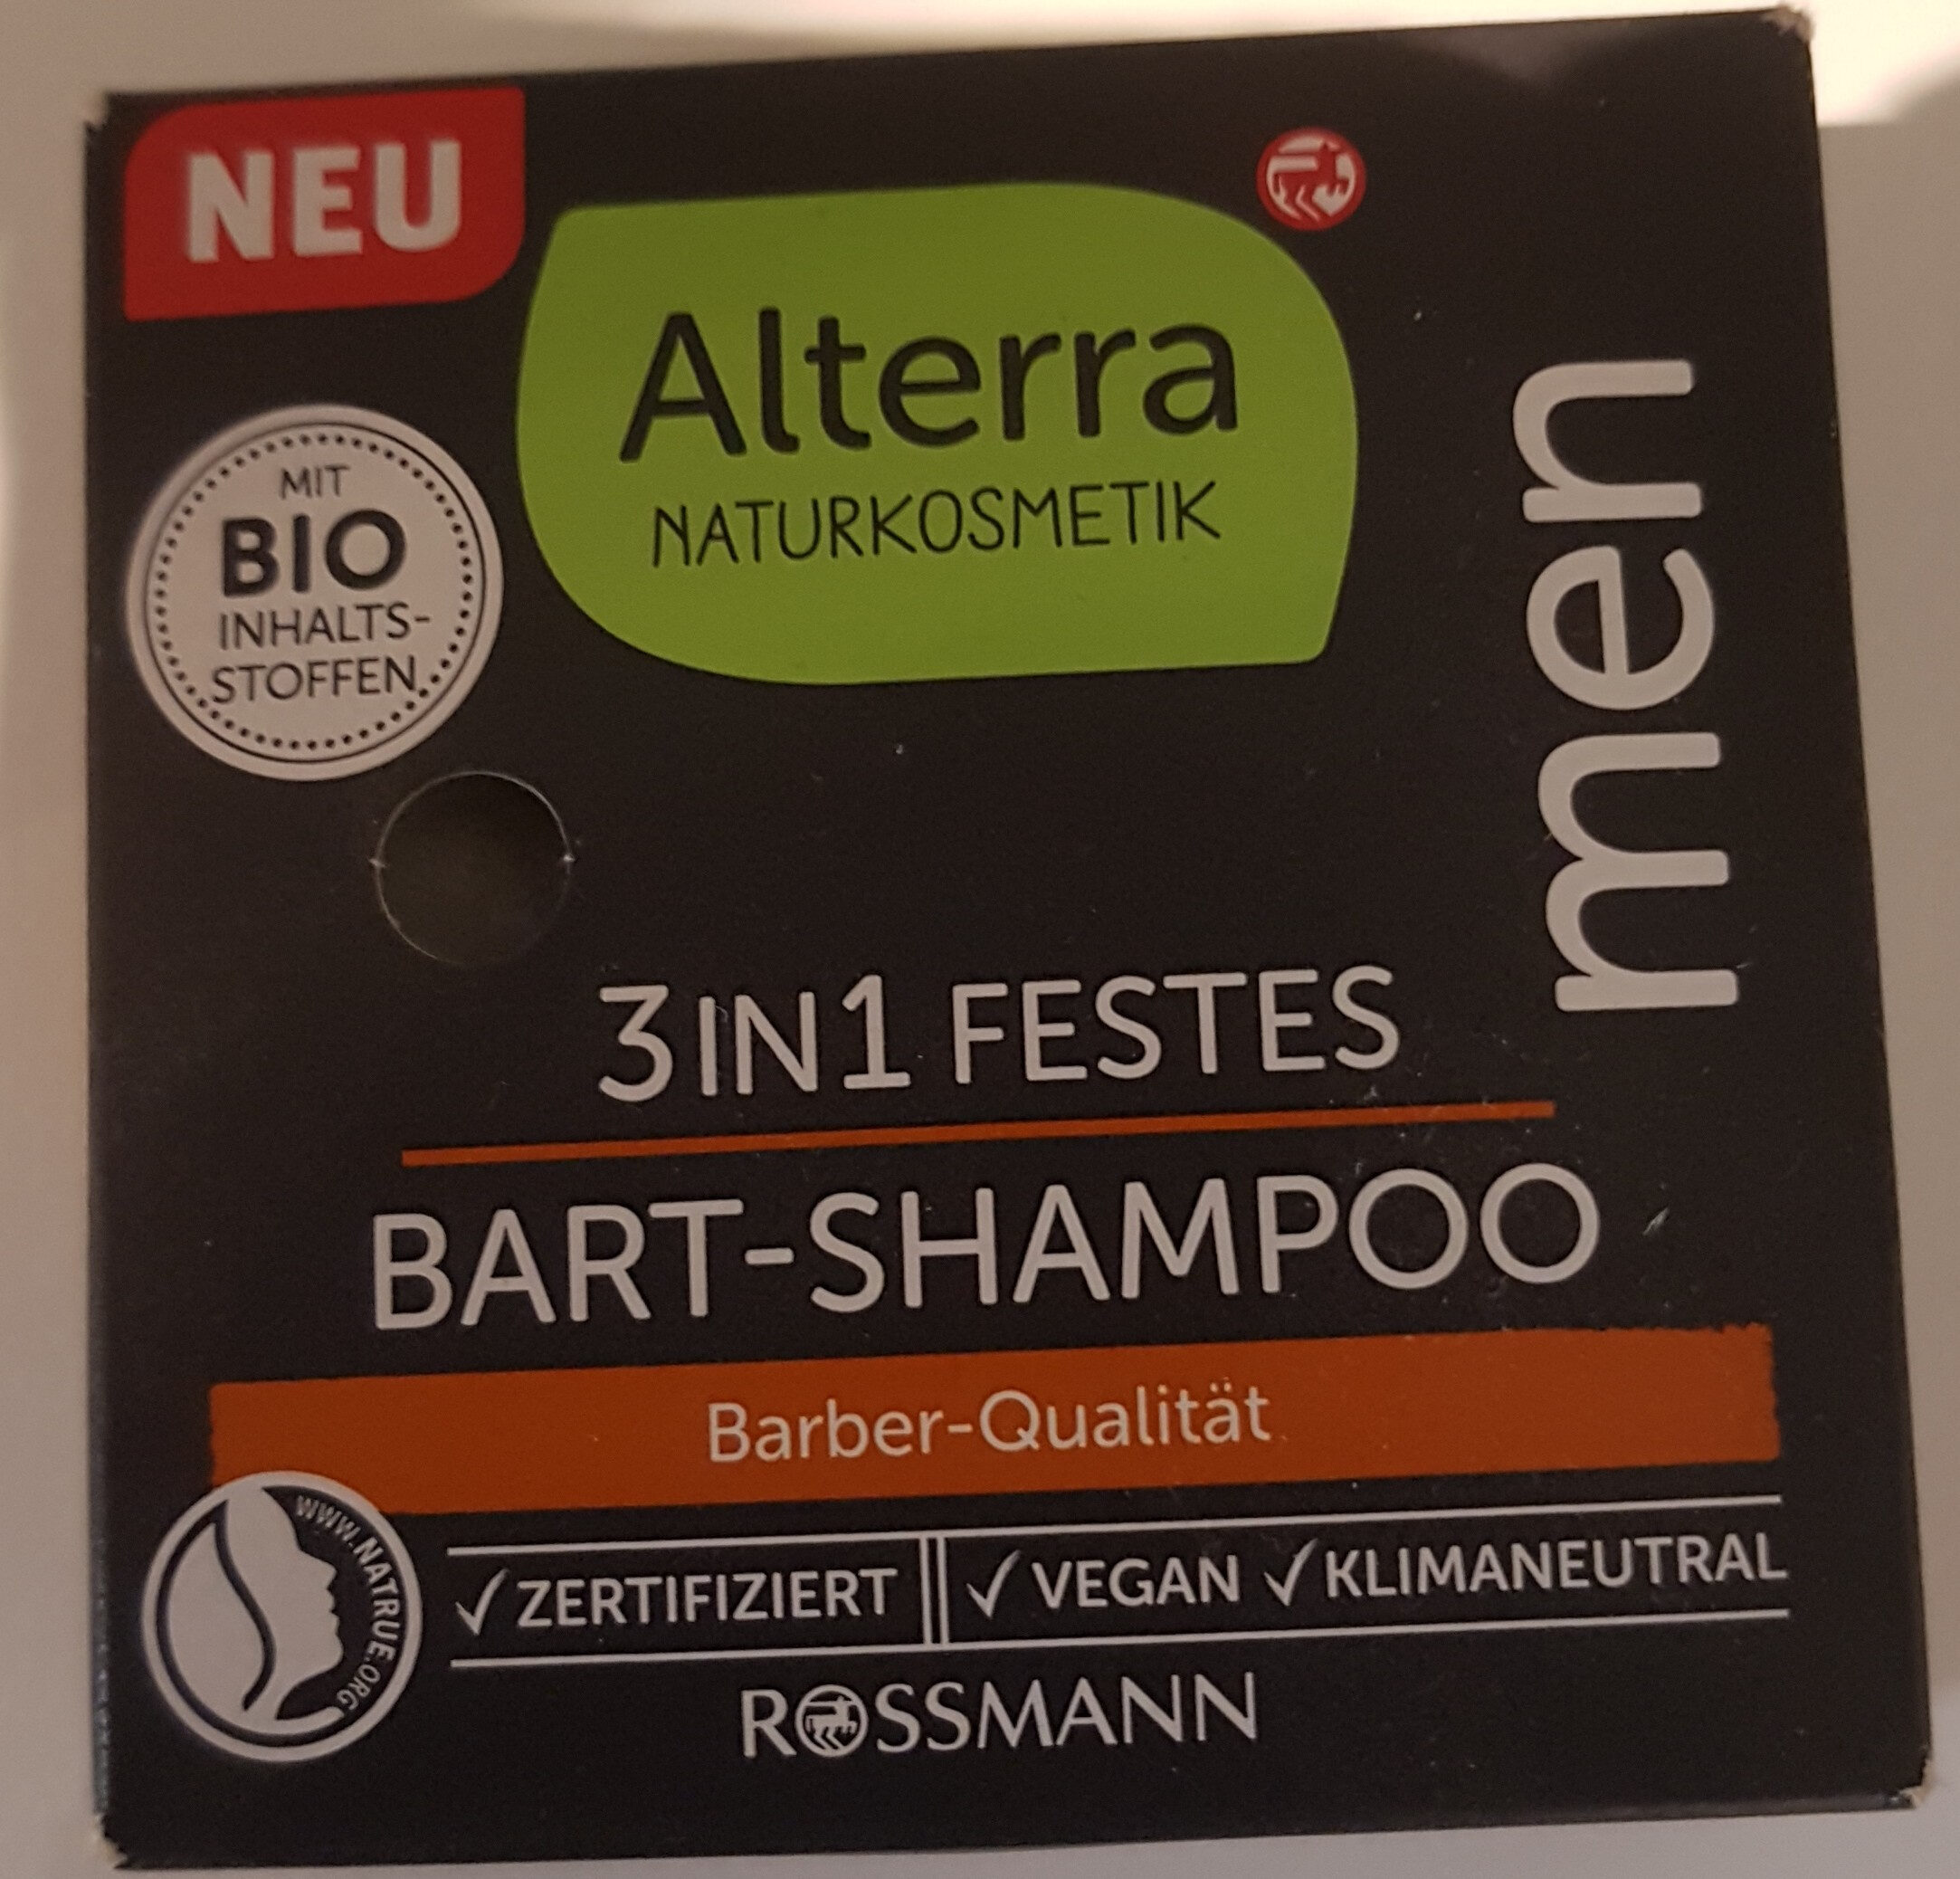 Alterra 3in1 festes Bart-Shampoo - Produto - de